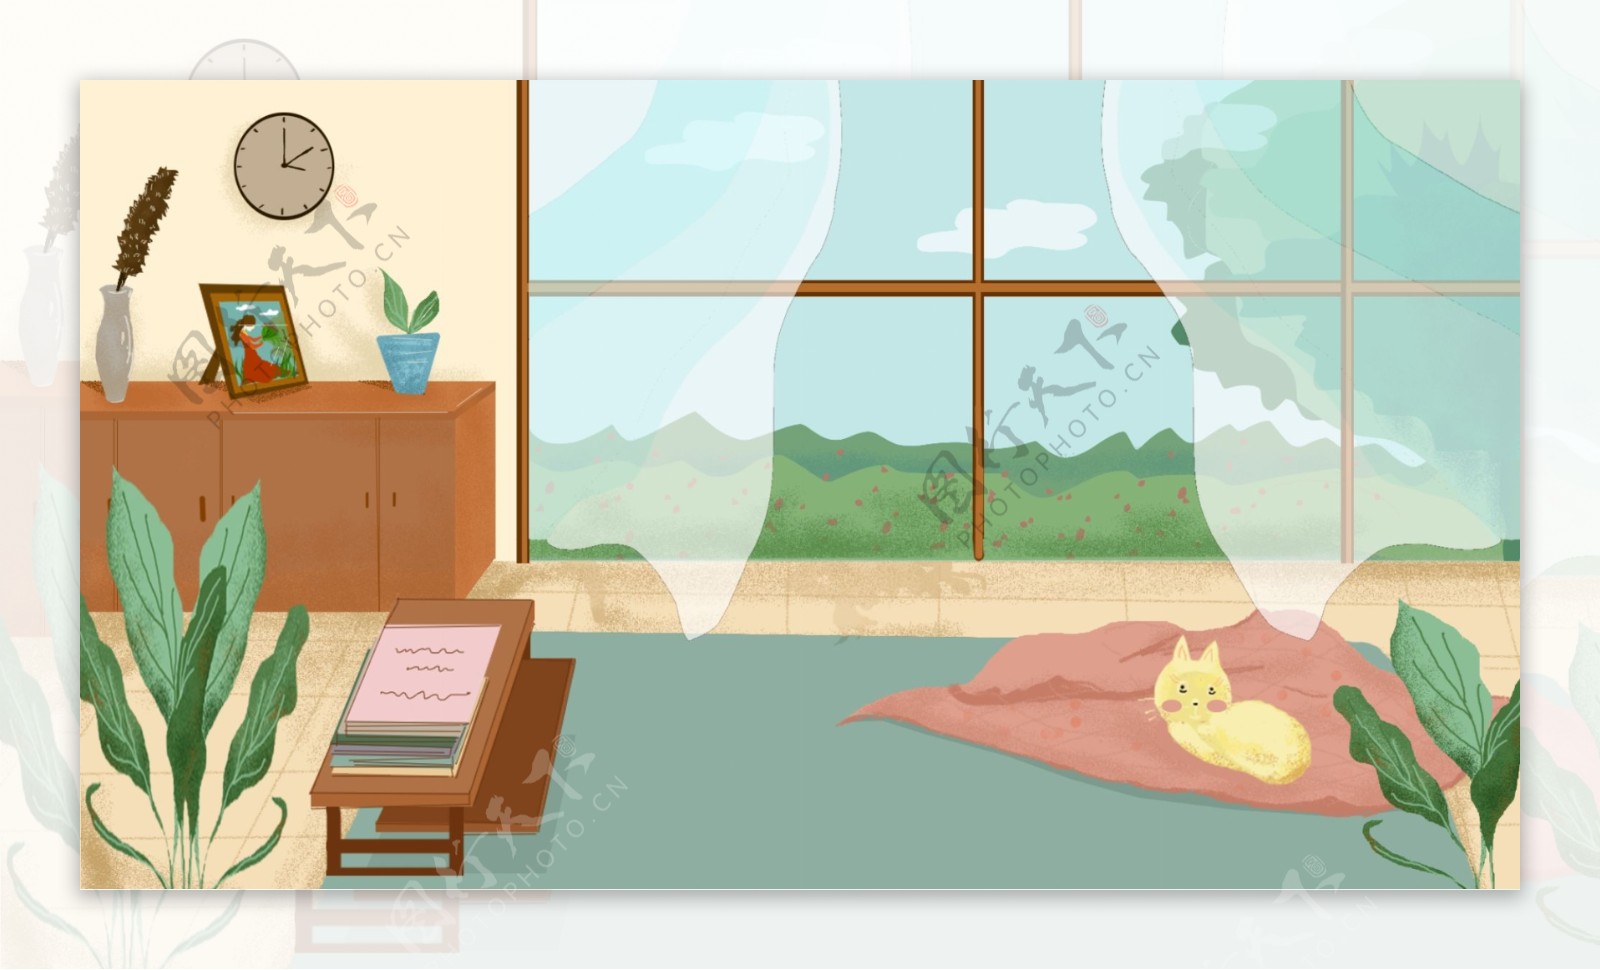 房间窗户窗帘室内植物猫咪卡通背景